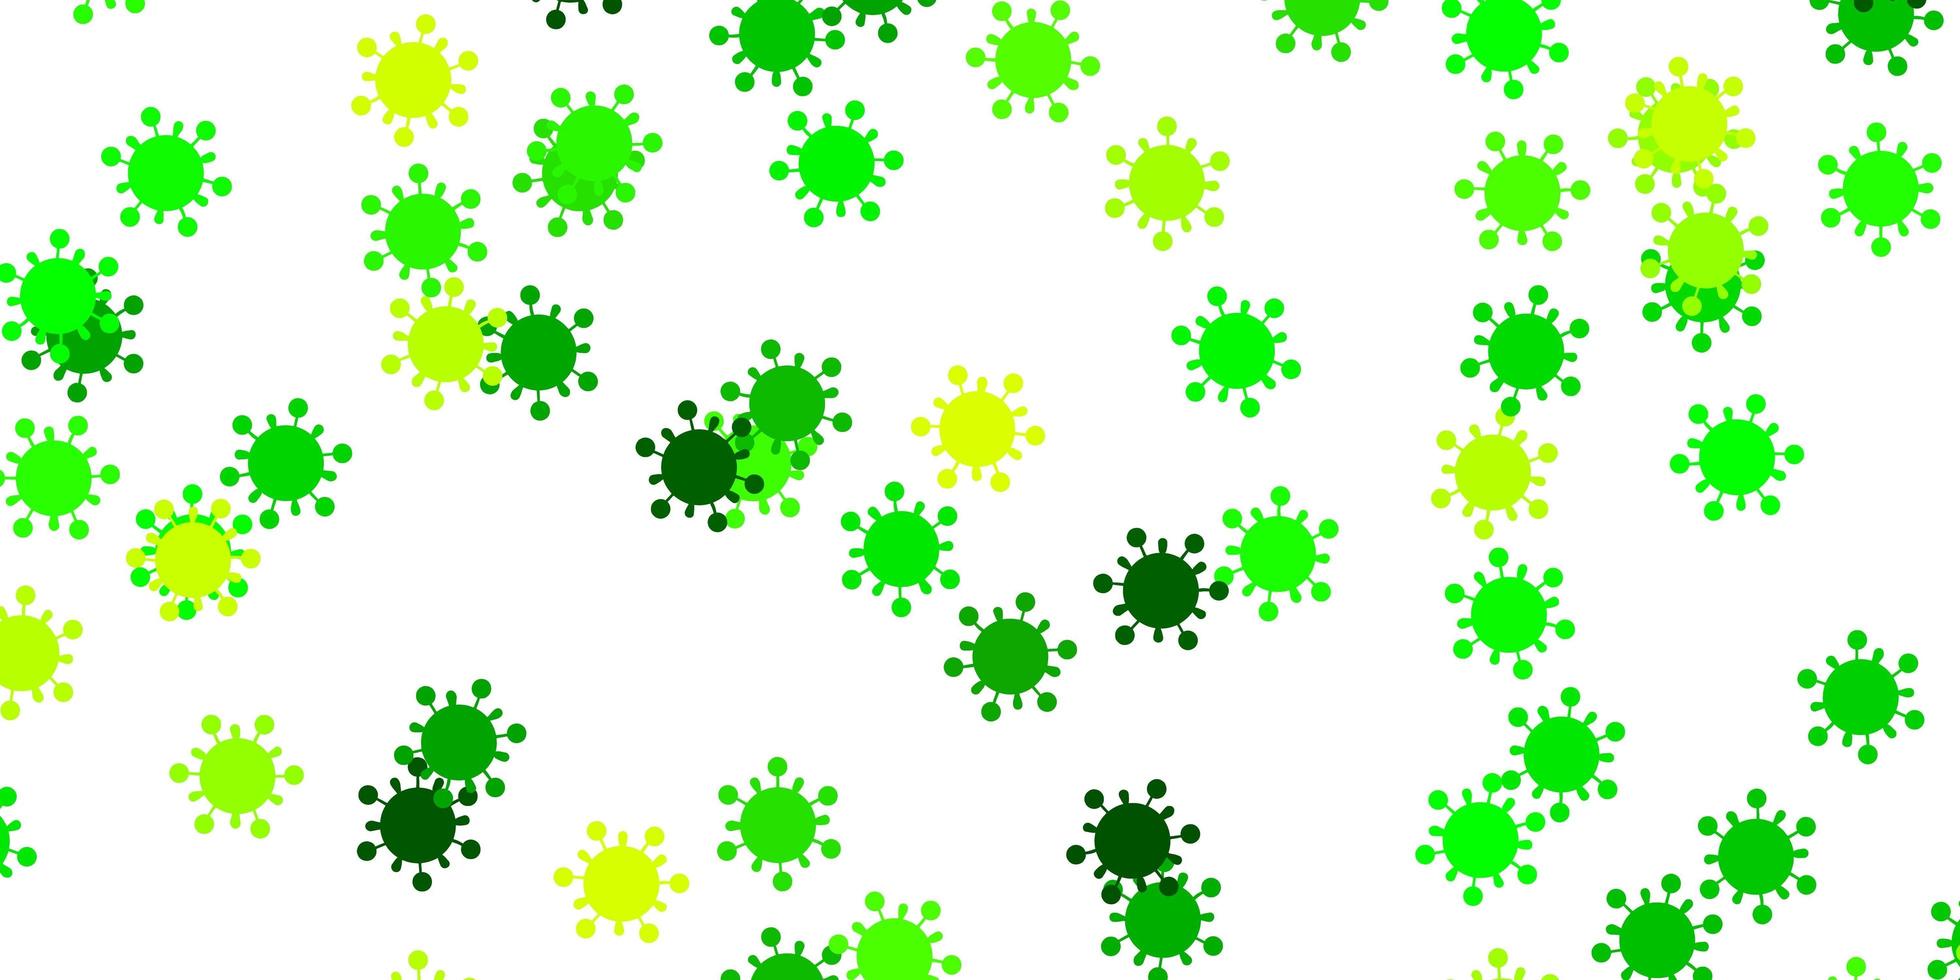 pano de fundo de vetor verde claro e amarelo com símbolos de vírus